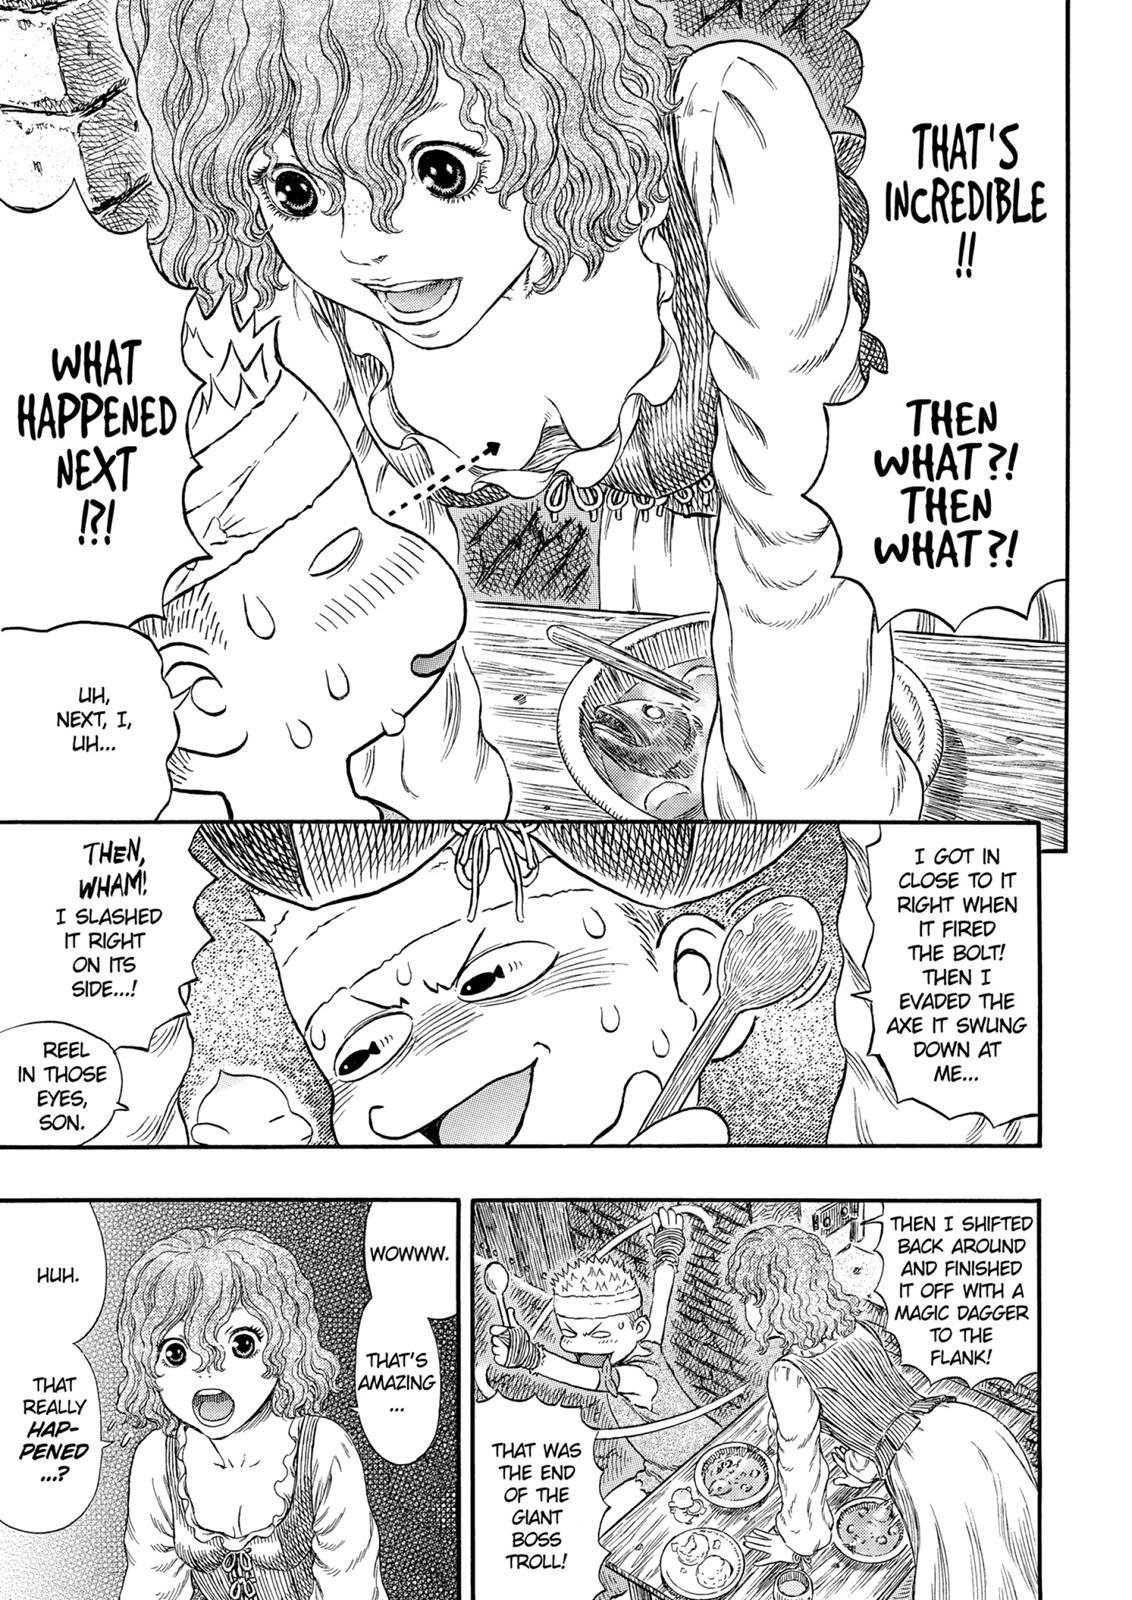 Berserk Manga Chapter 312 image 18